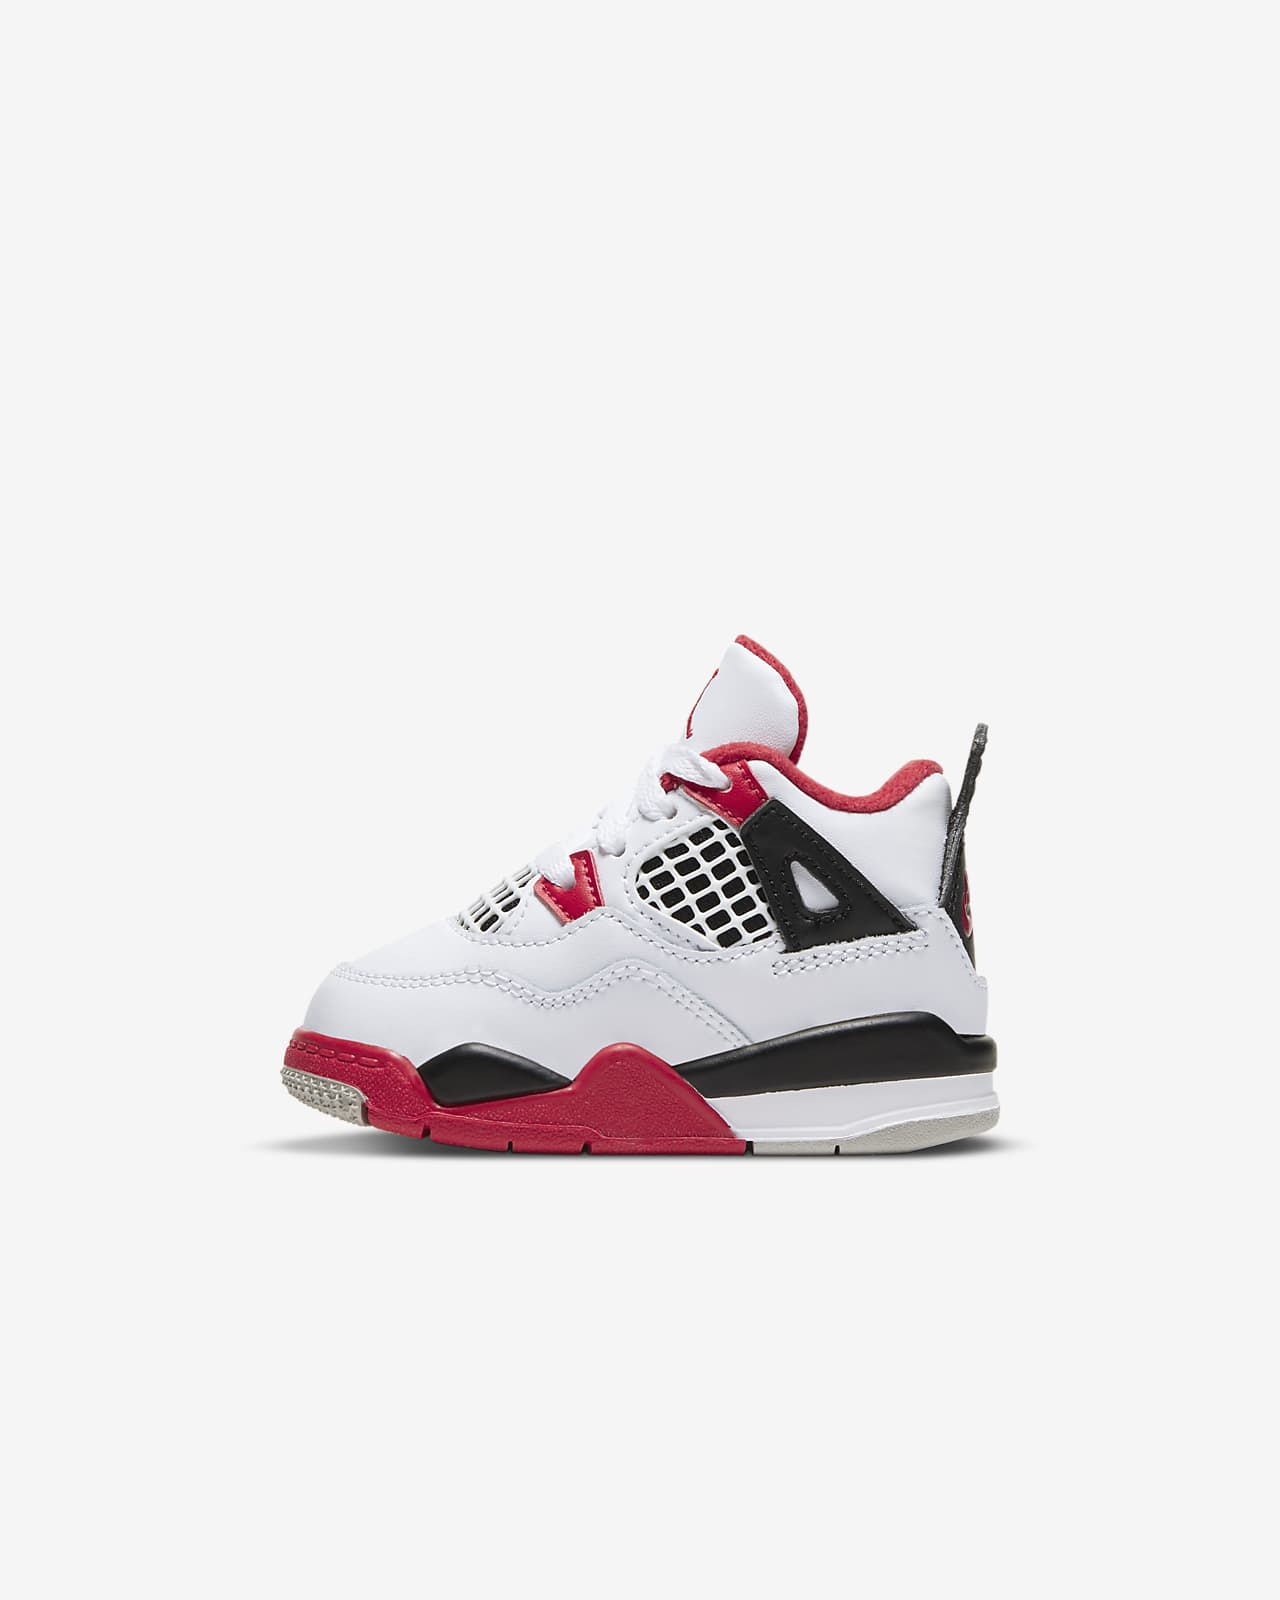 Jordan 4 Retro Baby/Toddler Shoe. Nike ID